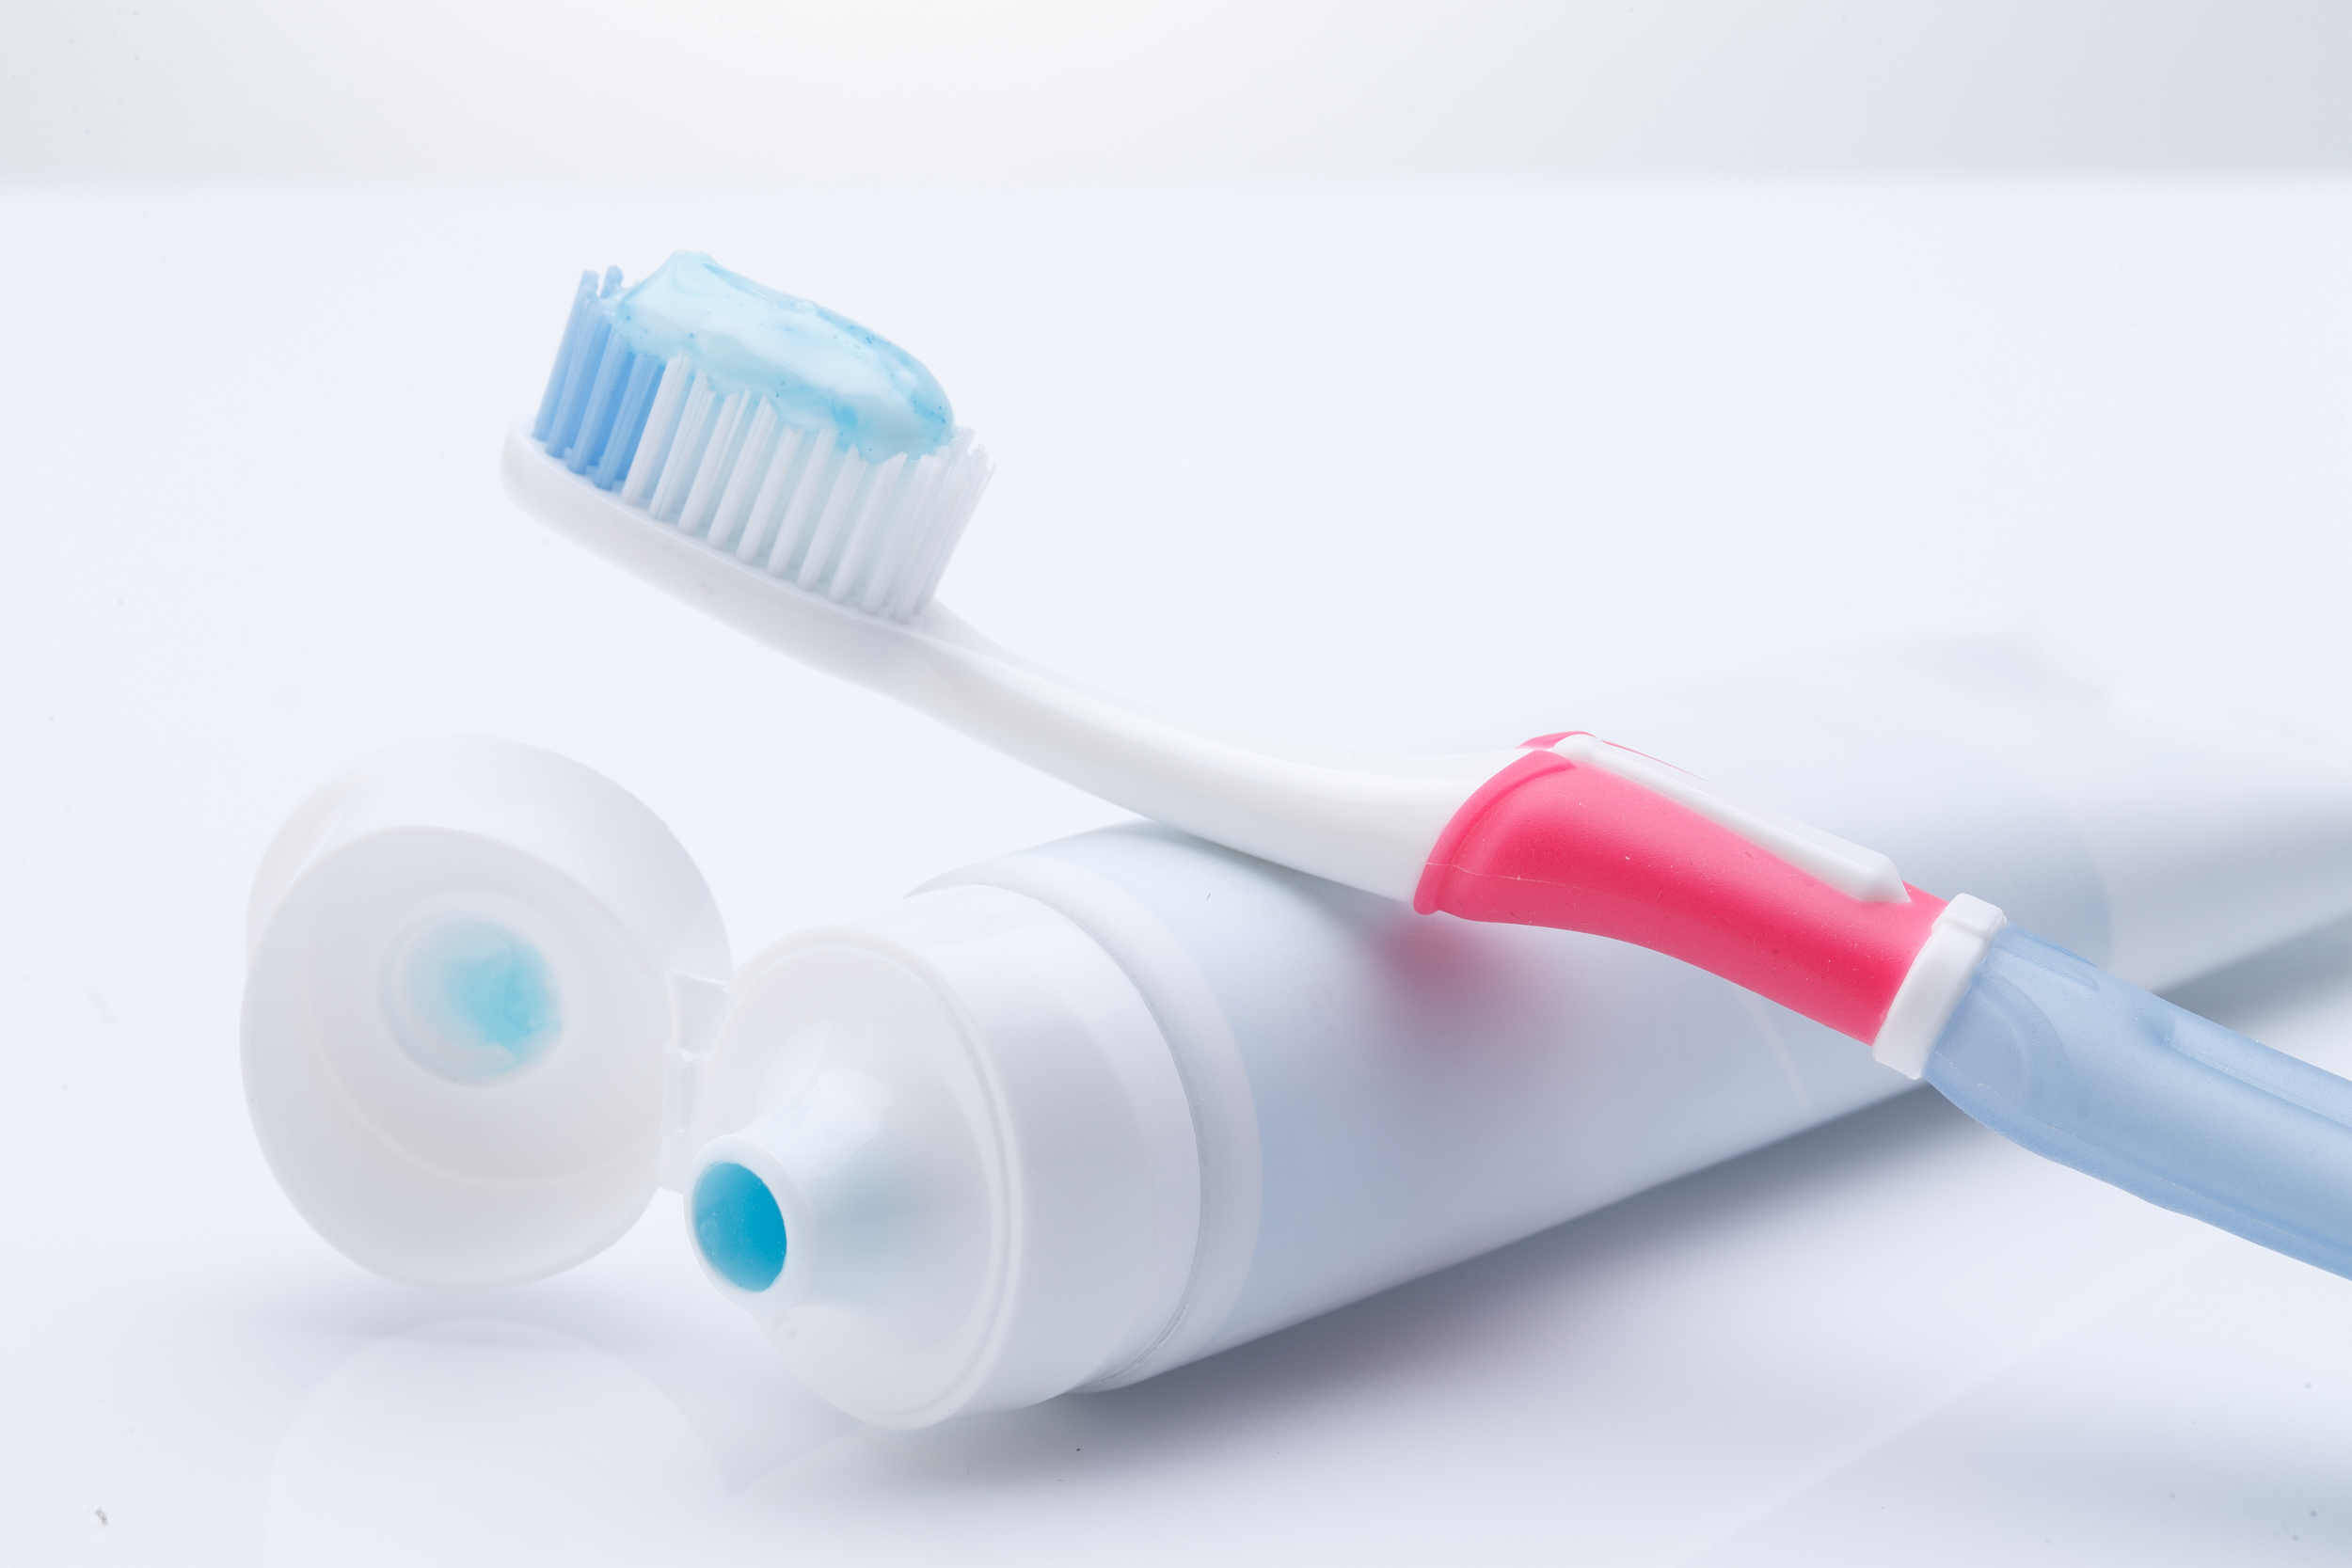 规范功效宣称范围及用语 《牙膏监督管理办法》将于今年12月起实施